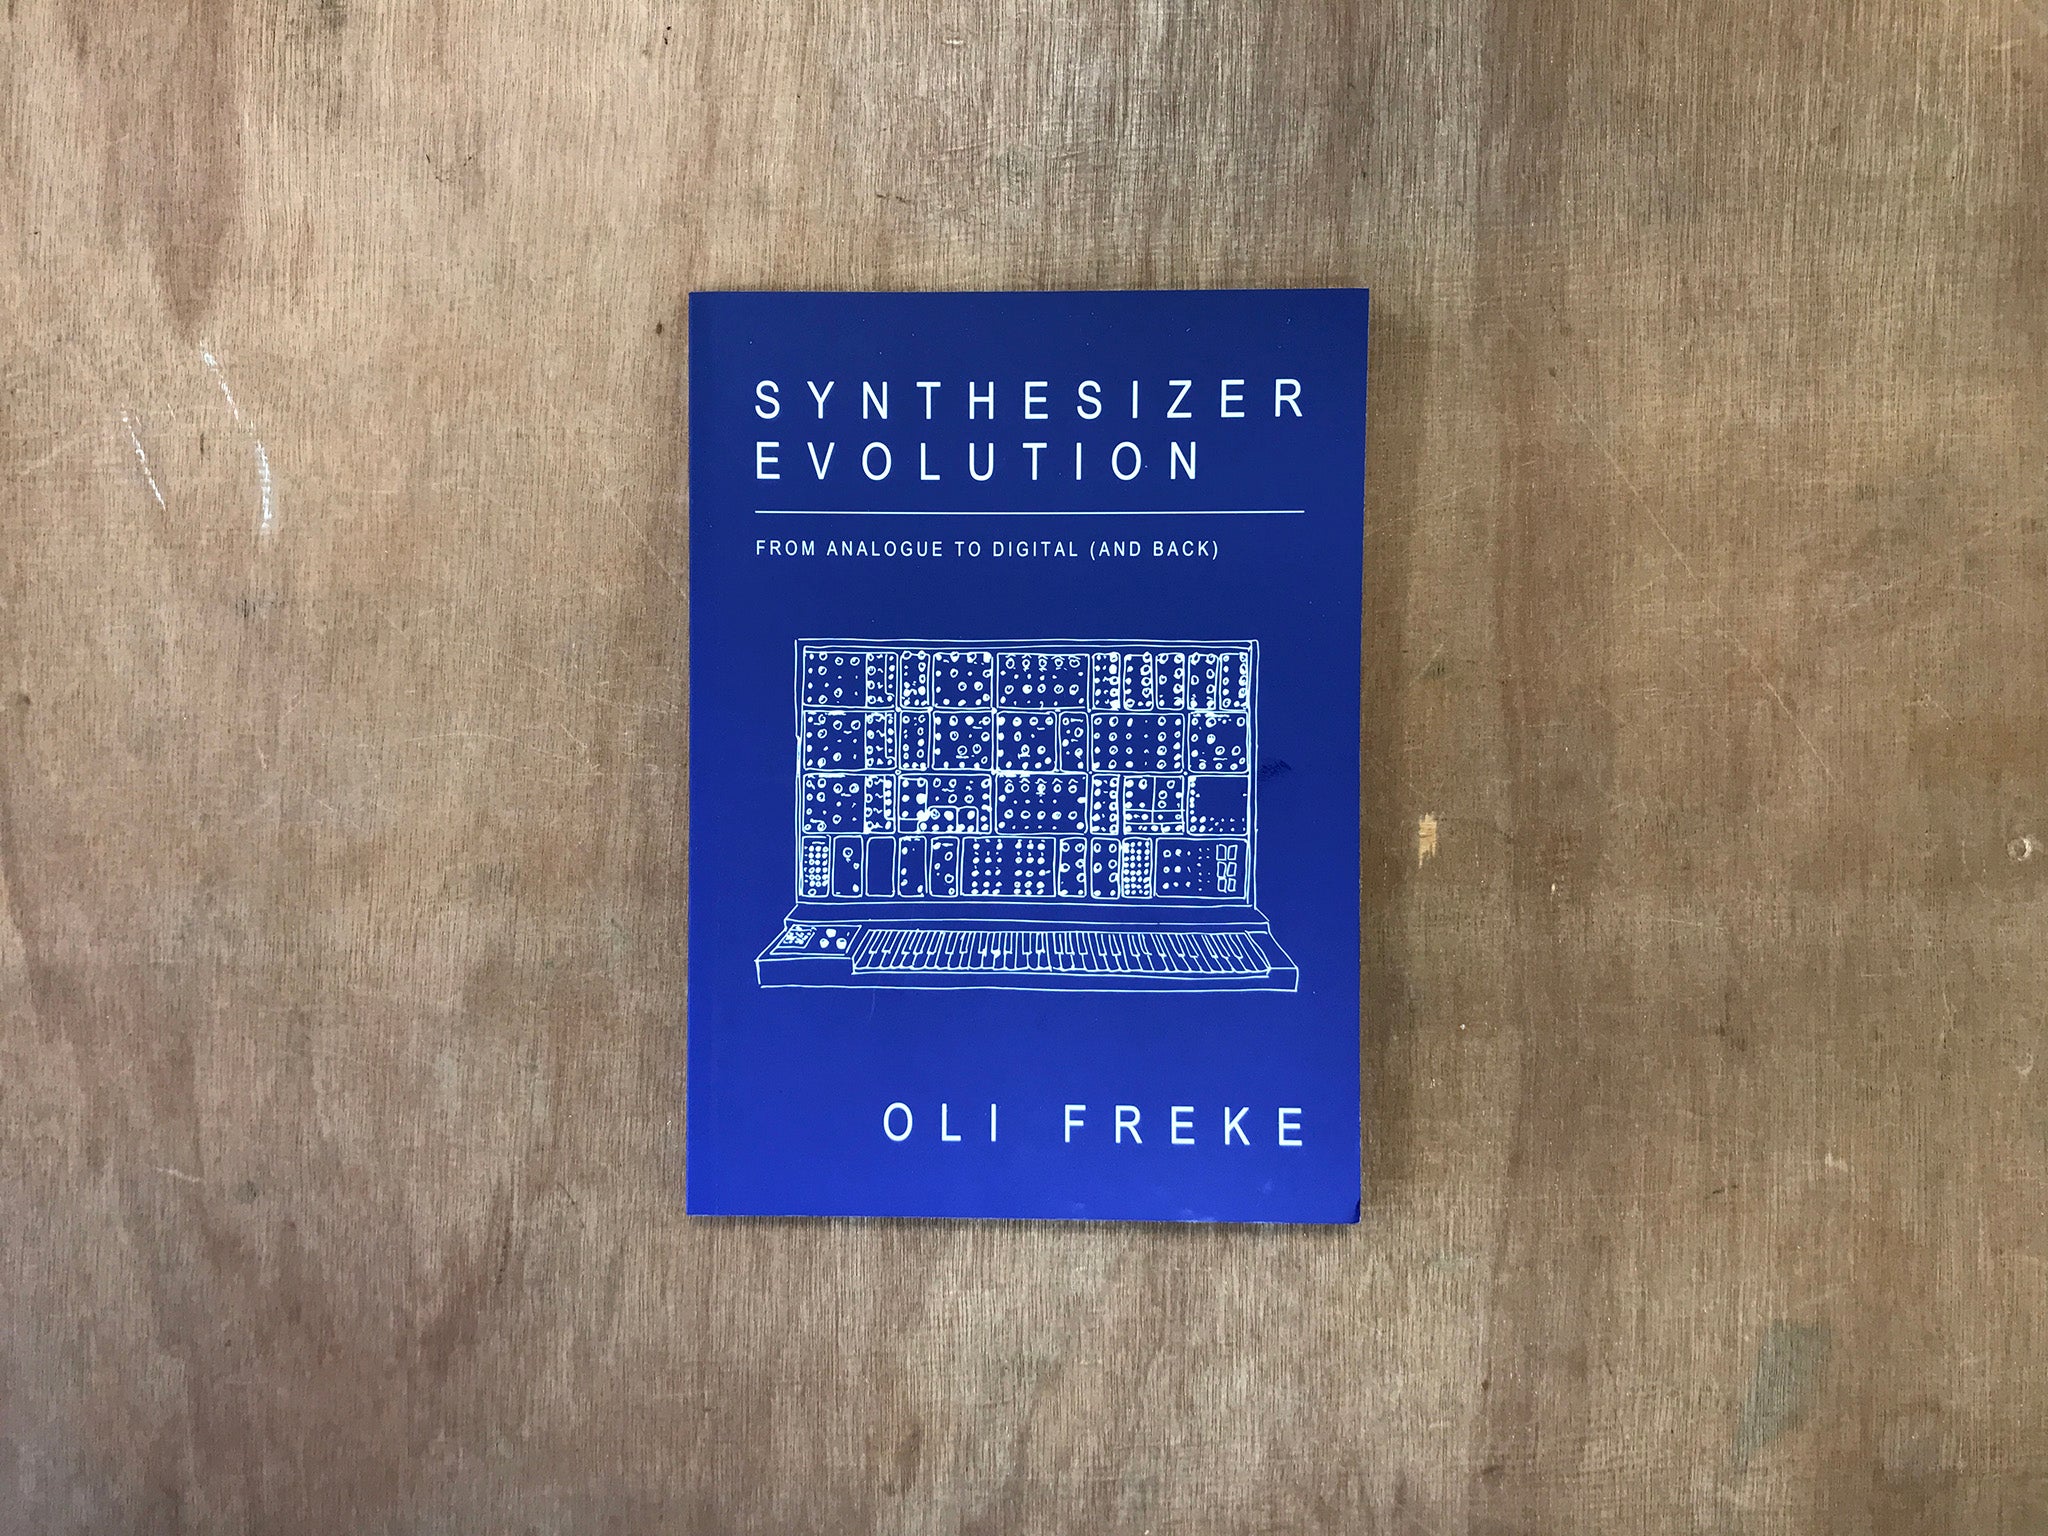 SYNTHESIZER EVOLUTION by Oli Freke